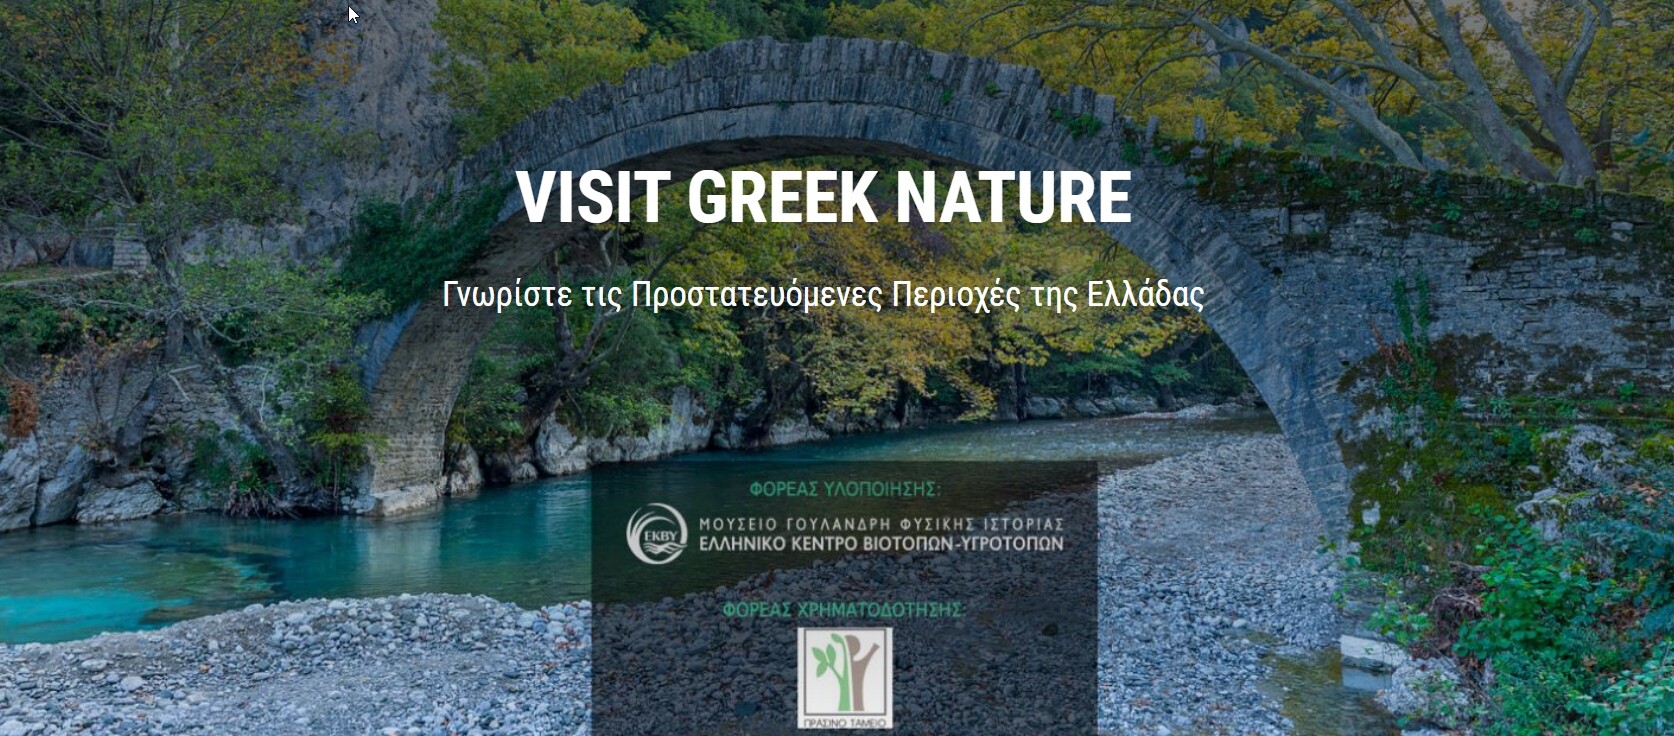 More information about "Visit Greek Nature: Όλες οι προστατευόμενες περιοχές της Ελλάδας σε μια ιστοσελίδα"